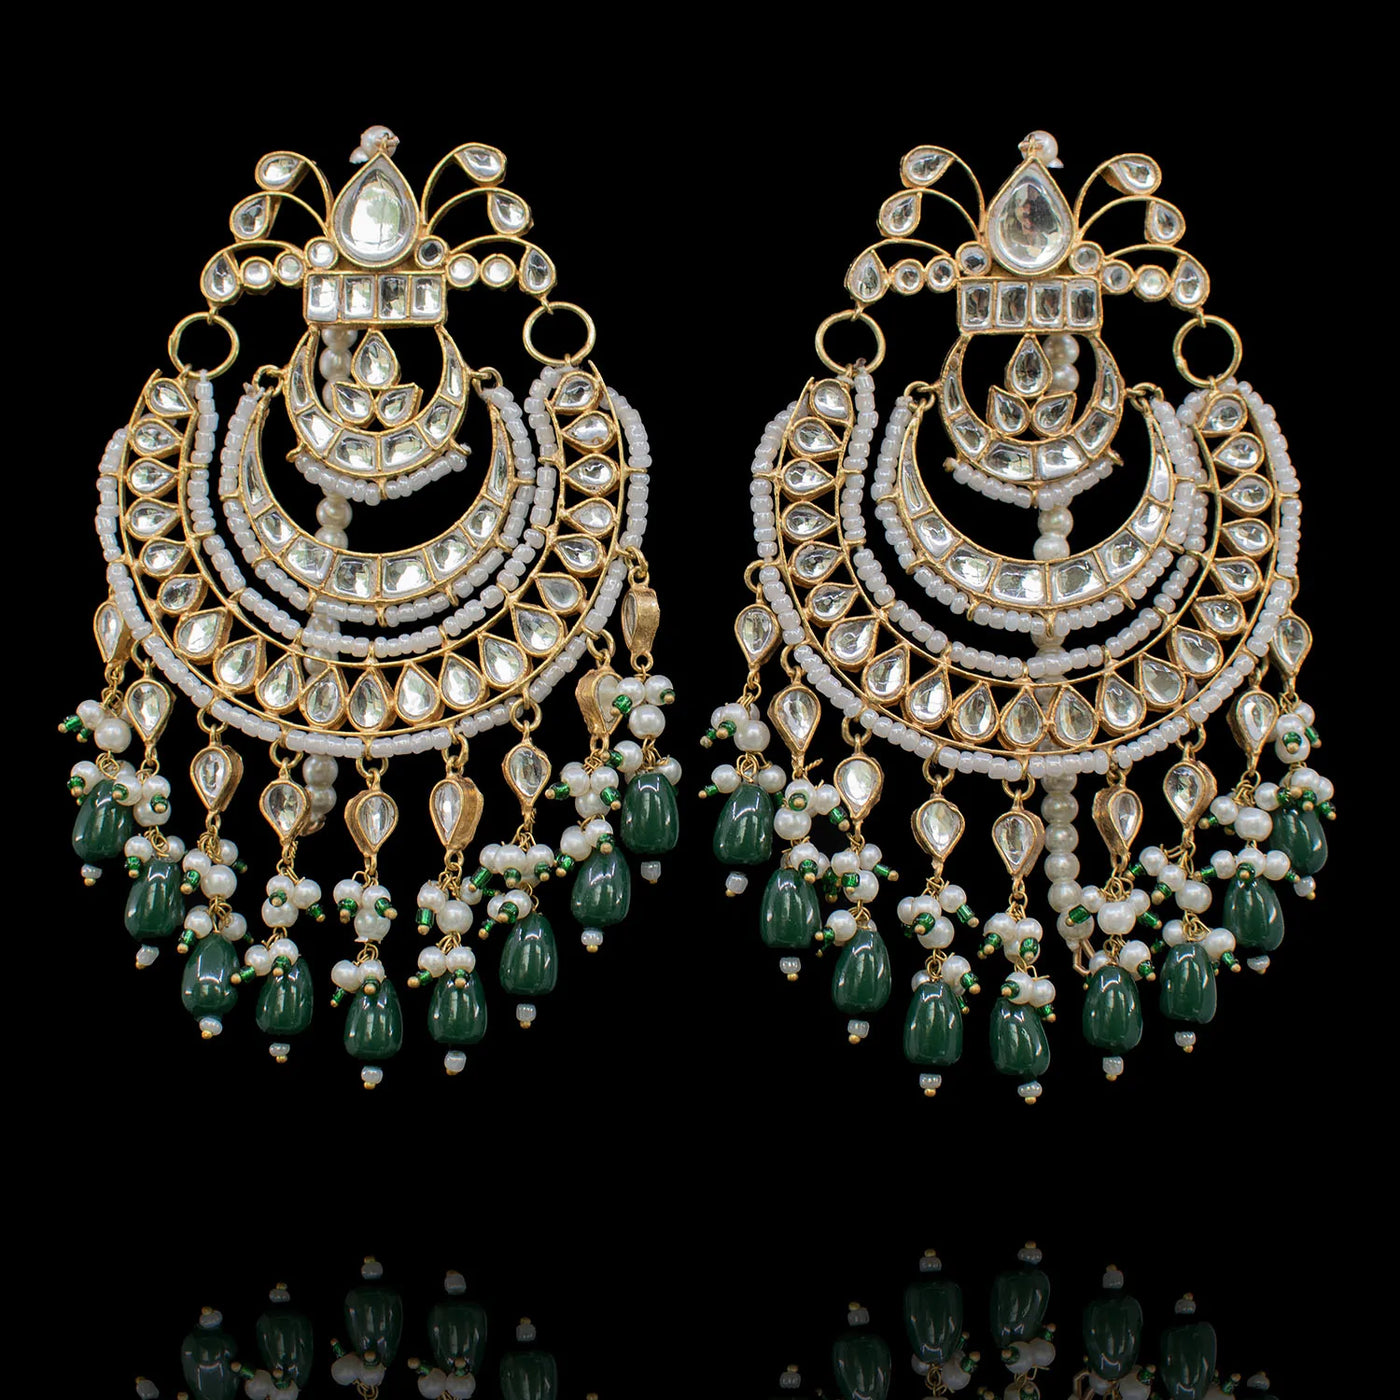 Custom Order-Awaba Set (earrings, teekah & jhoomar)